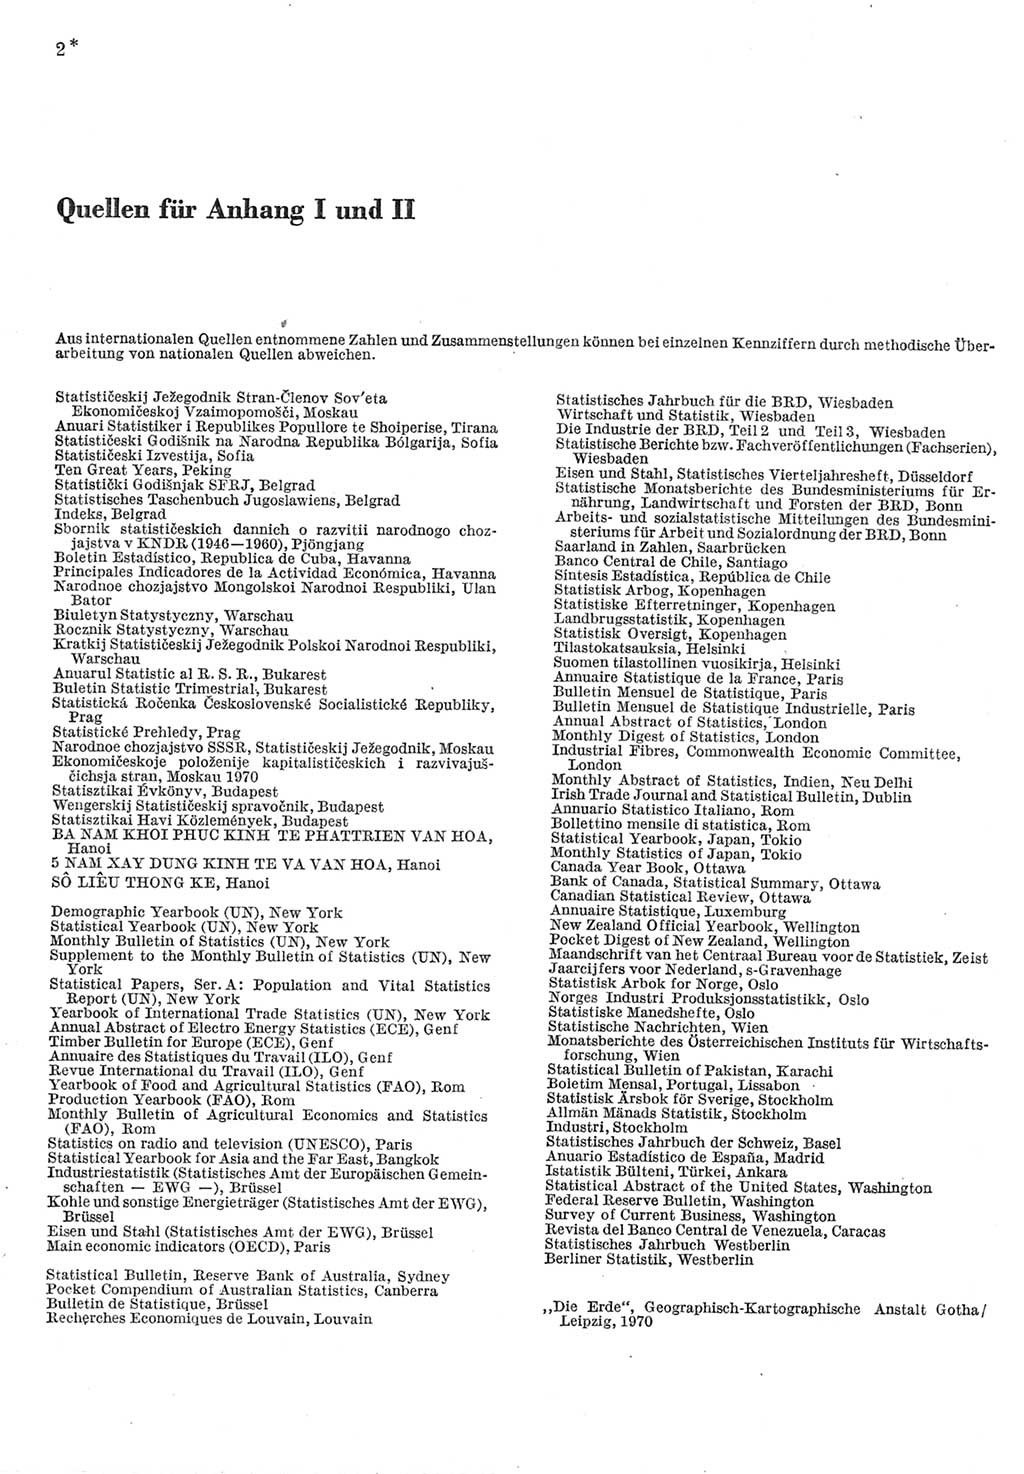 Statistisches Jahrbuch der Deutschen Demokratischen Republik (DDR) 1977, Seite 2 (Stat. Jb. DDR 1977, S. 2)